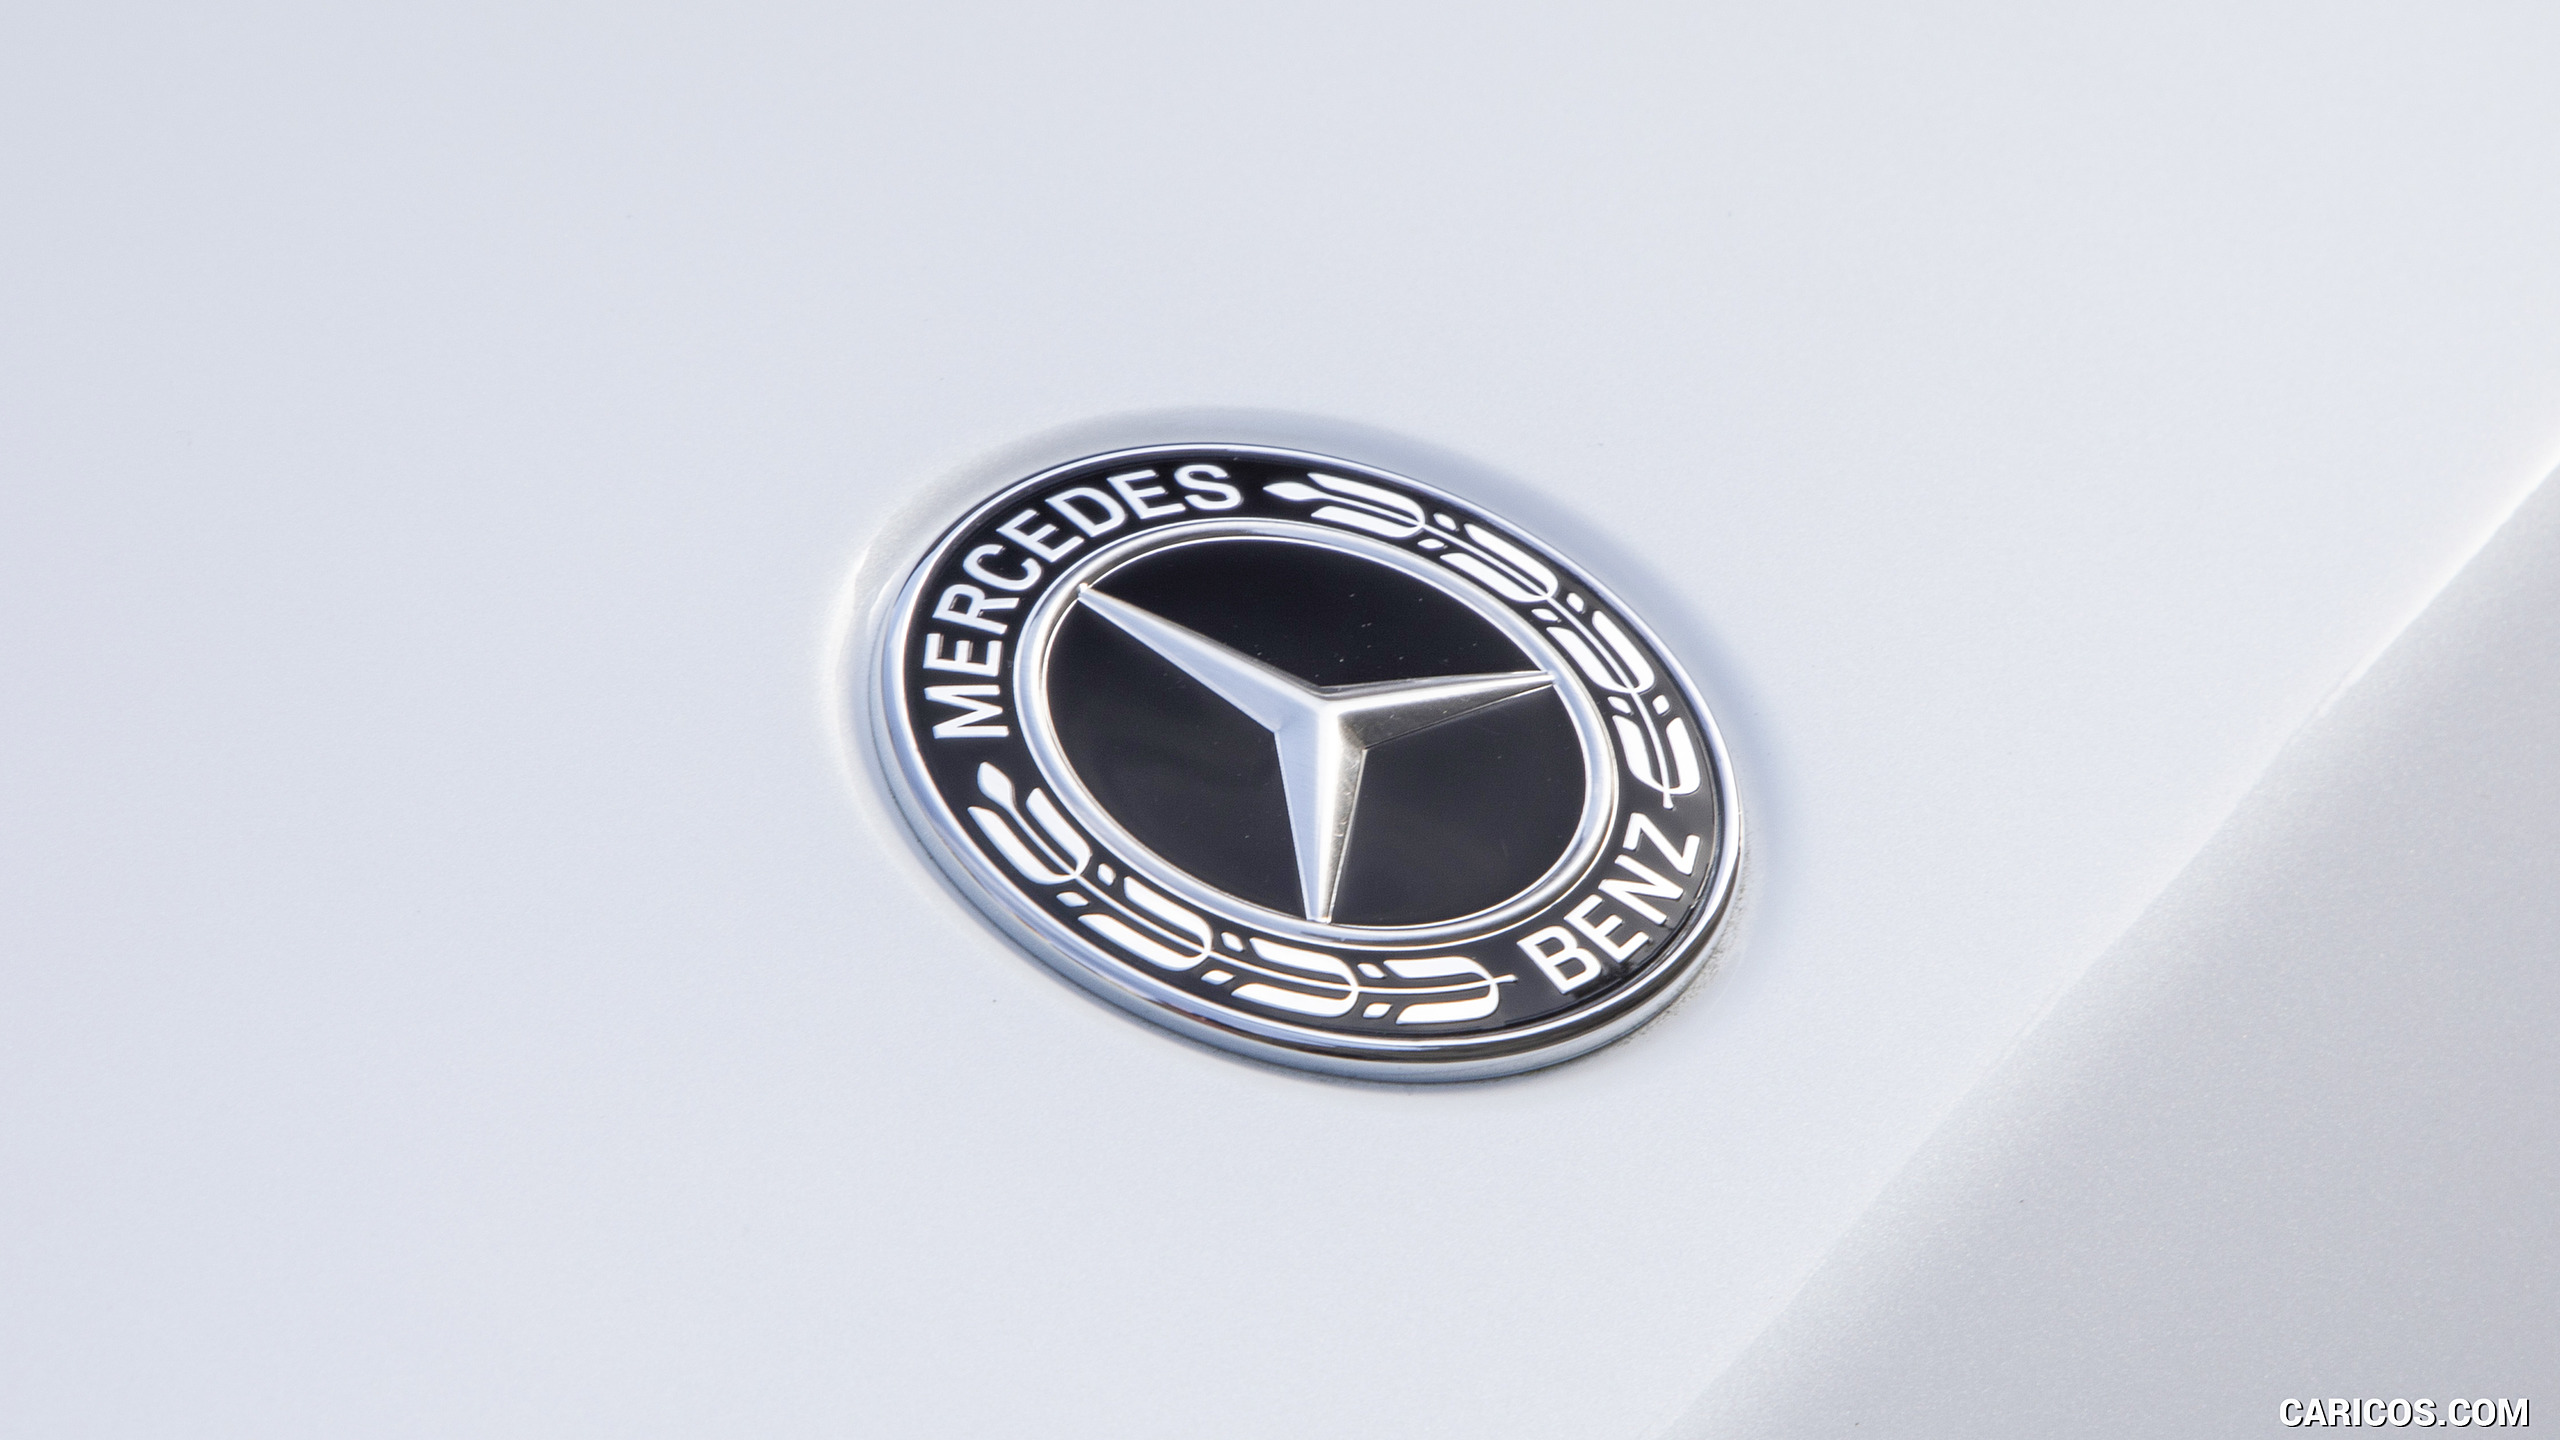 2019 Mercedes-AMG G63 (Color: Designo Diamond White Bright) - Badge, #106 of 452